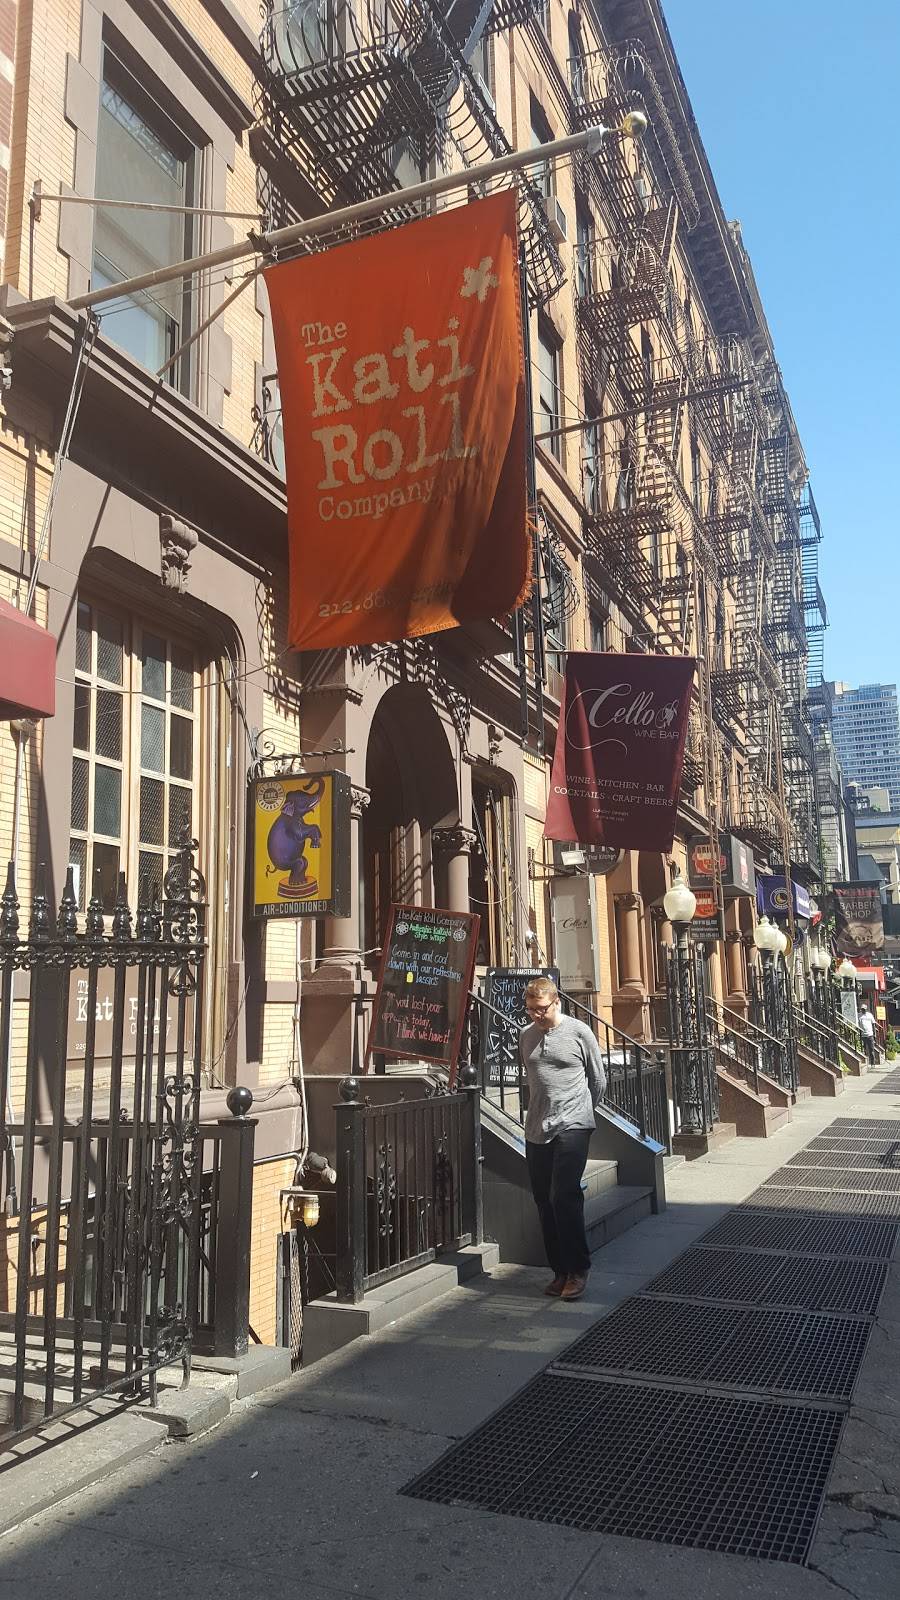 The Kati Roll Company | restaurant | 229 E 53rd St, New York, NY 10022, USA | 2128881700 OR +1 212-888-1700